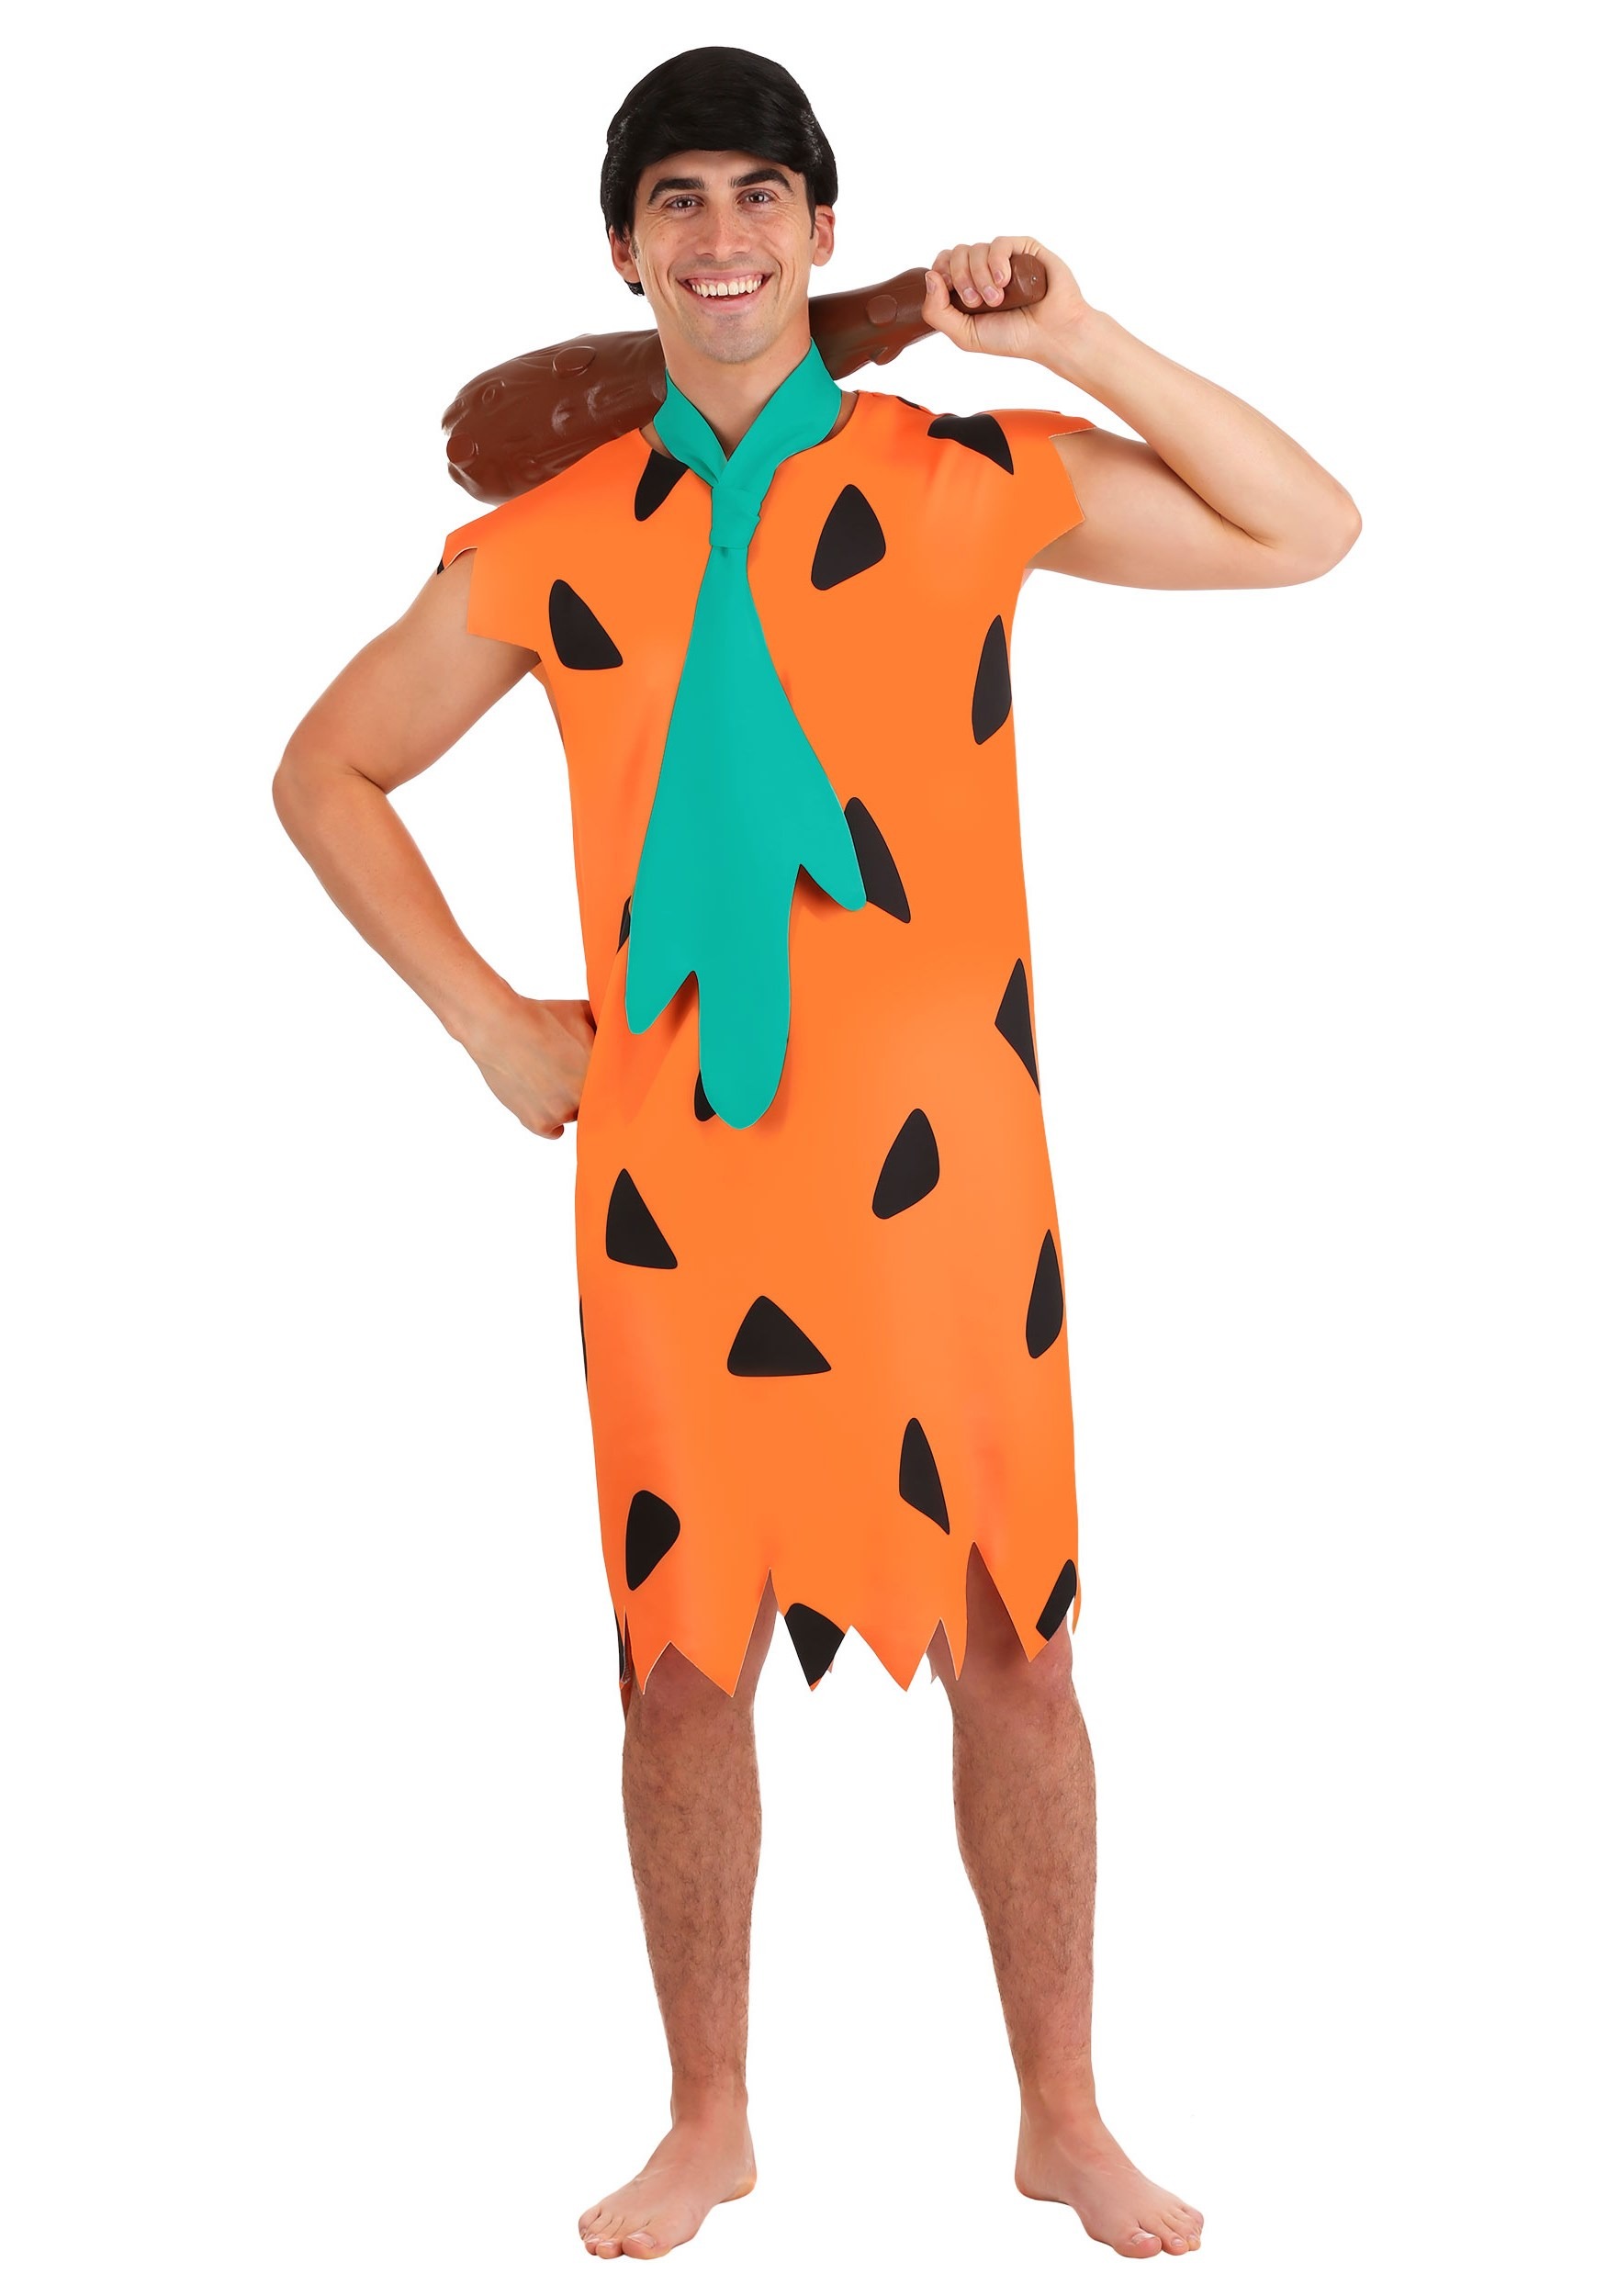 Fred Flintstone Mascot Costume Flintstones Costumes Character halloween ...